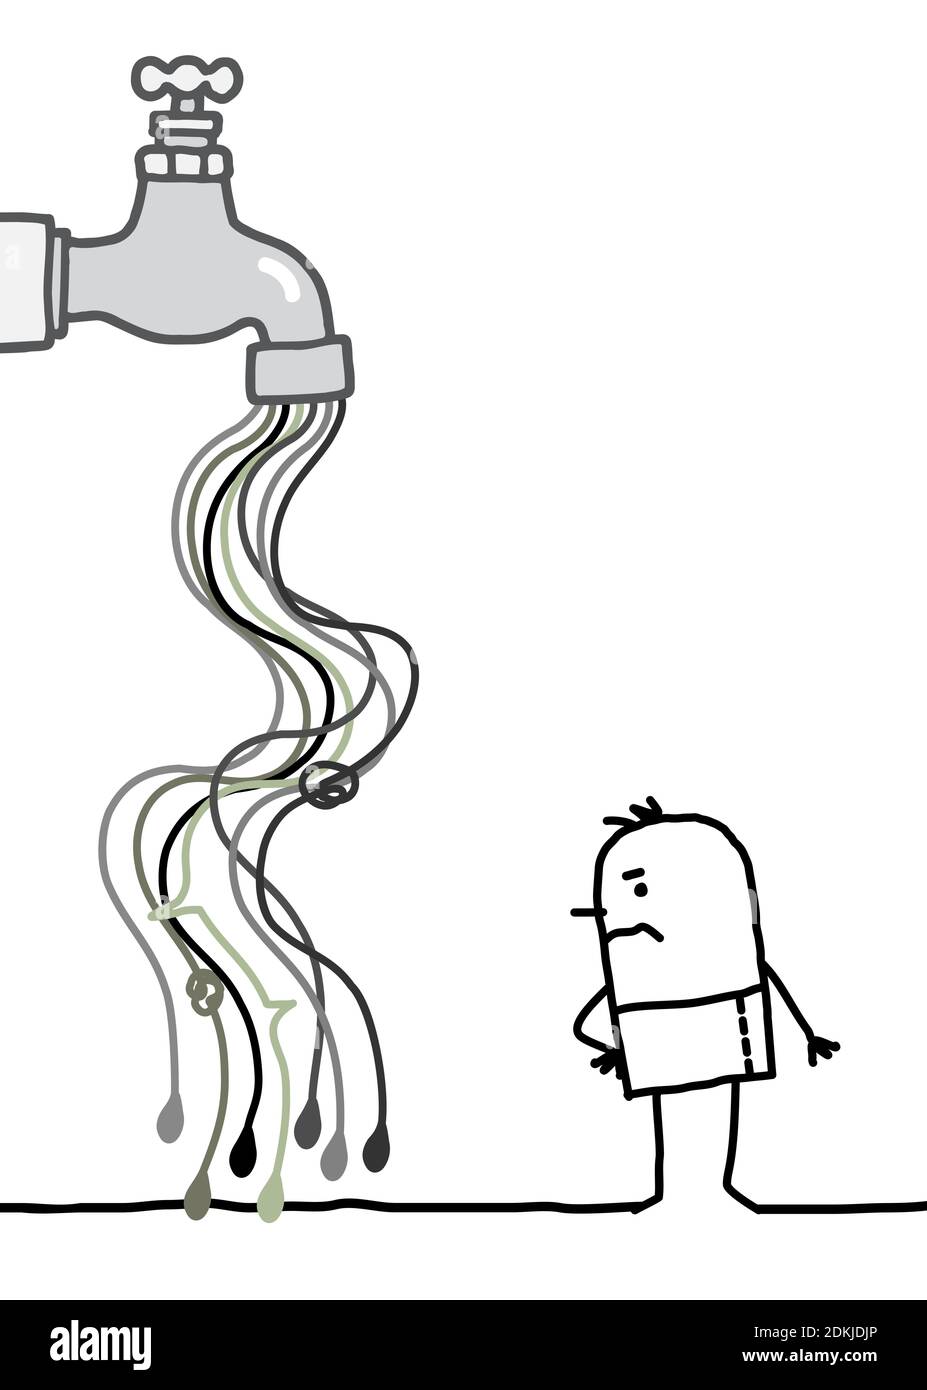 Un homme de Carton, un homme à la main, qui regarde un Tap avec du gris Débit d'eau polluée Illustration de Vecteur